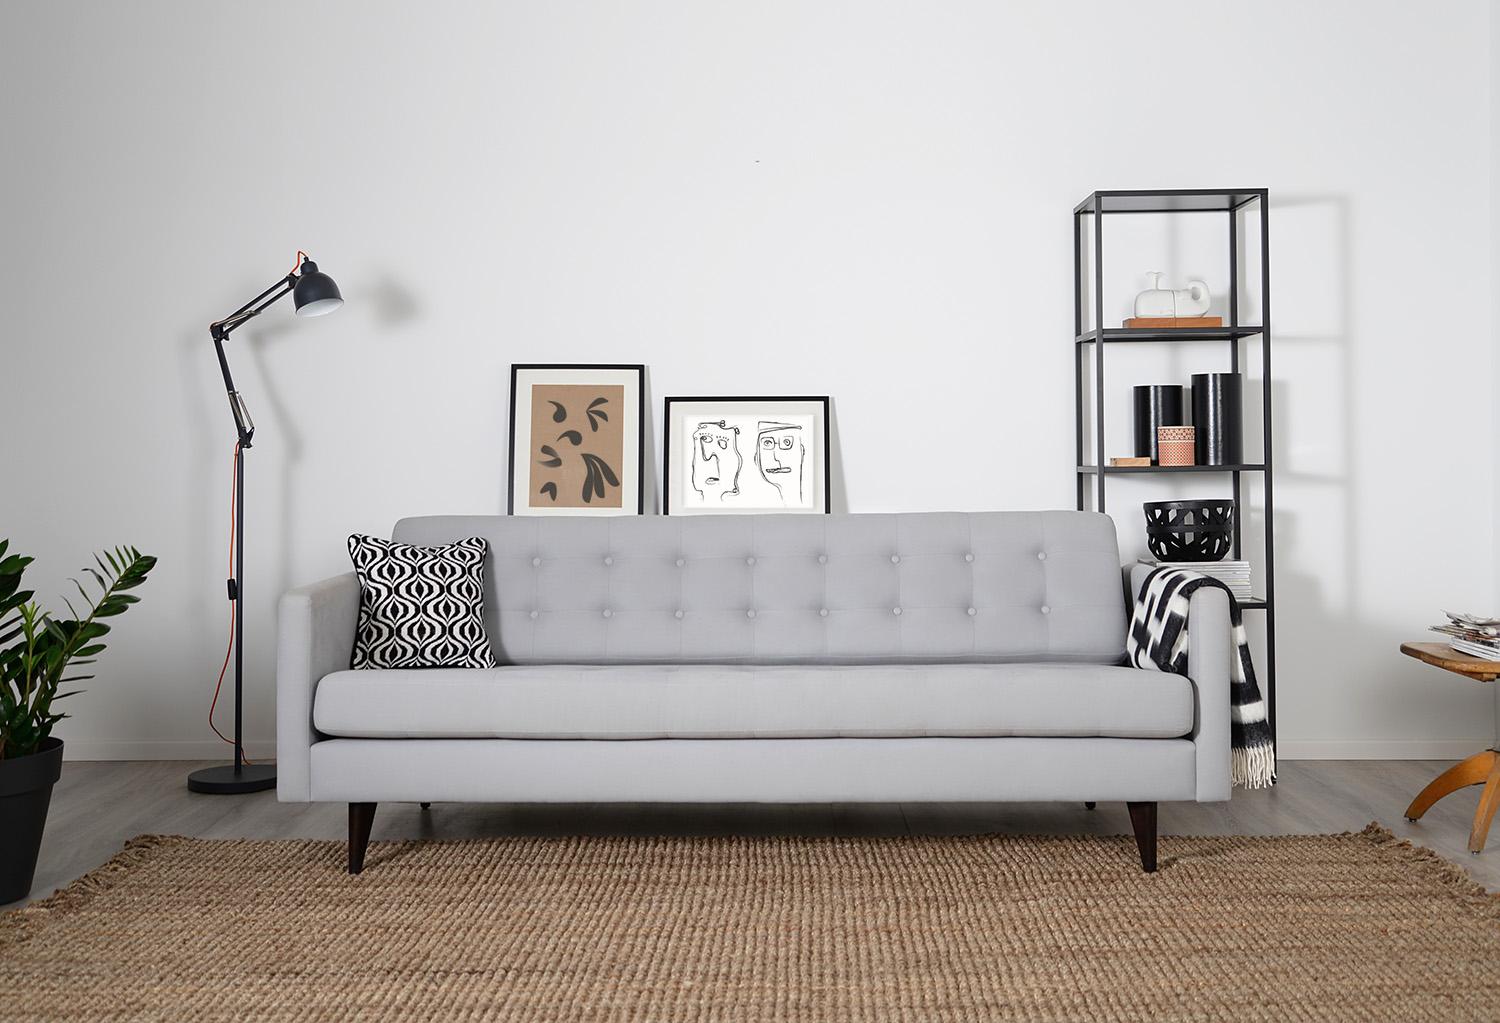 Modernes Designer-Sofa "Bundgaard" #sofa #minimalistisch #skandinavischesdesign ©Von Wilmowsky